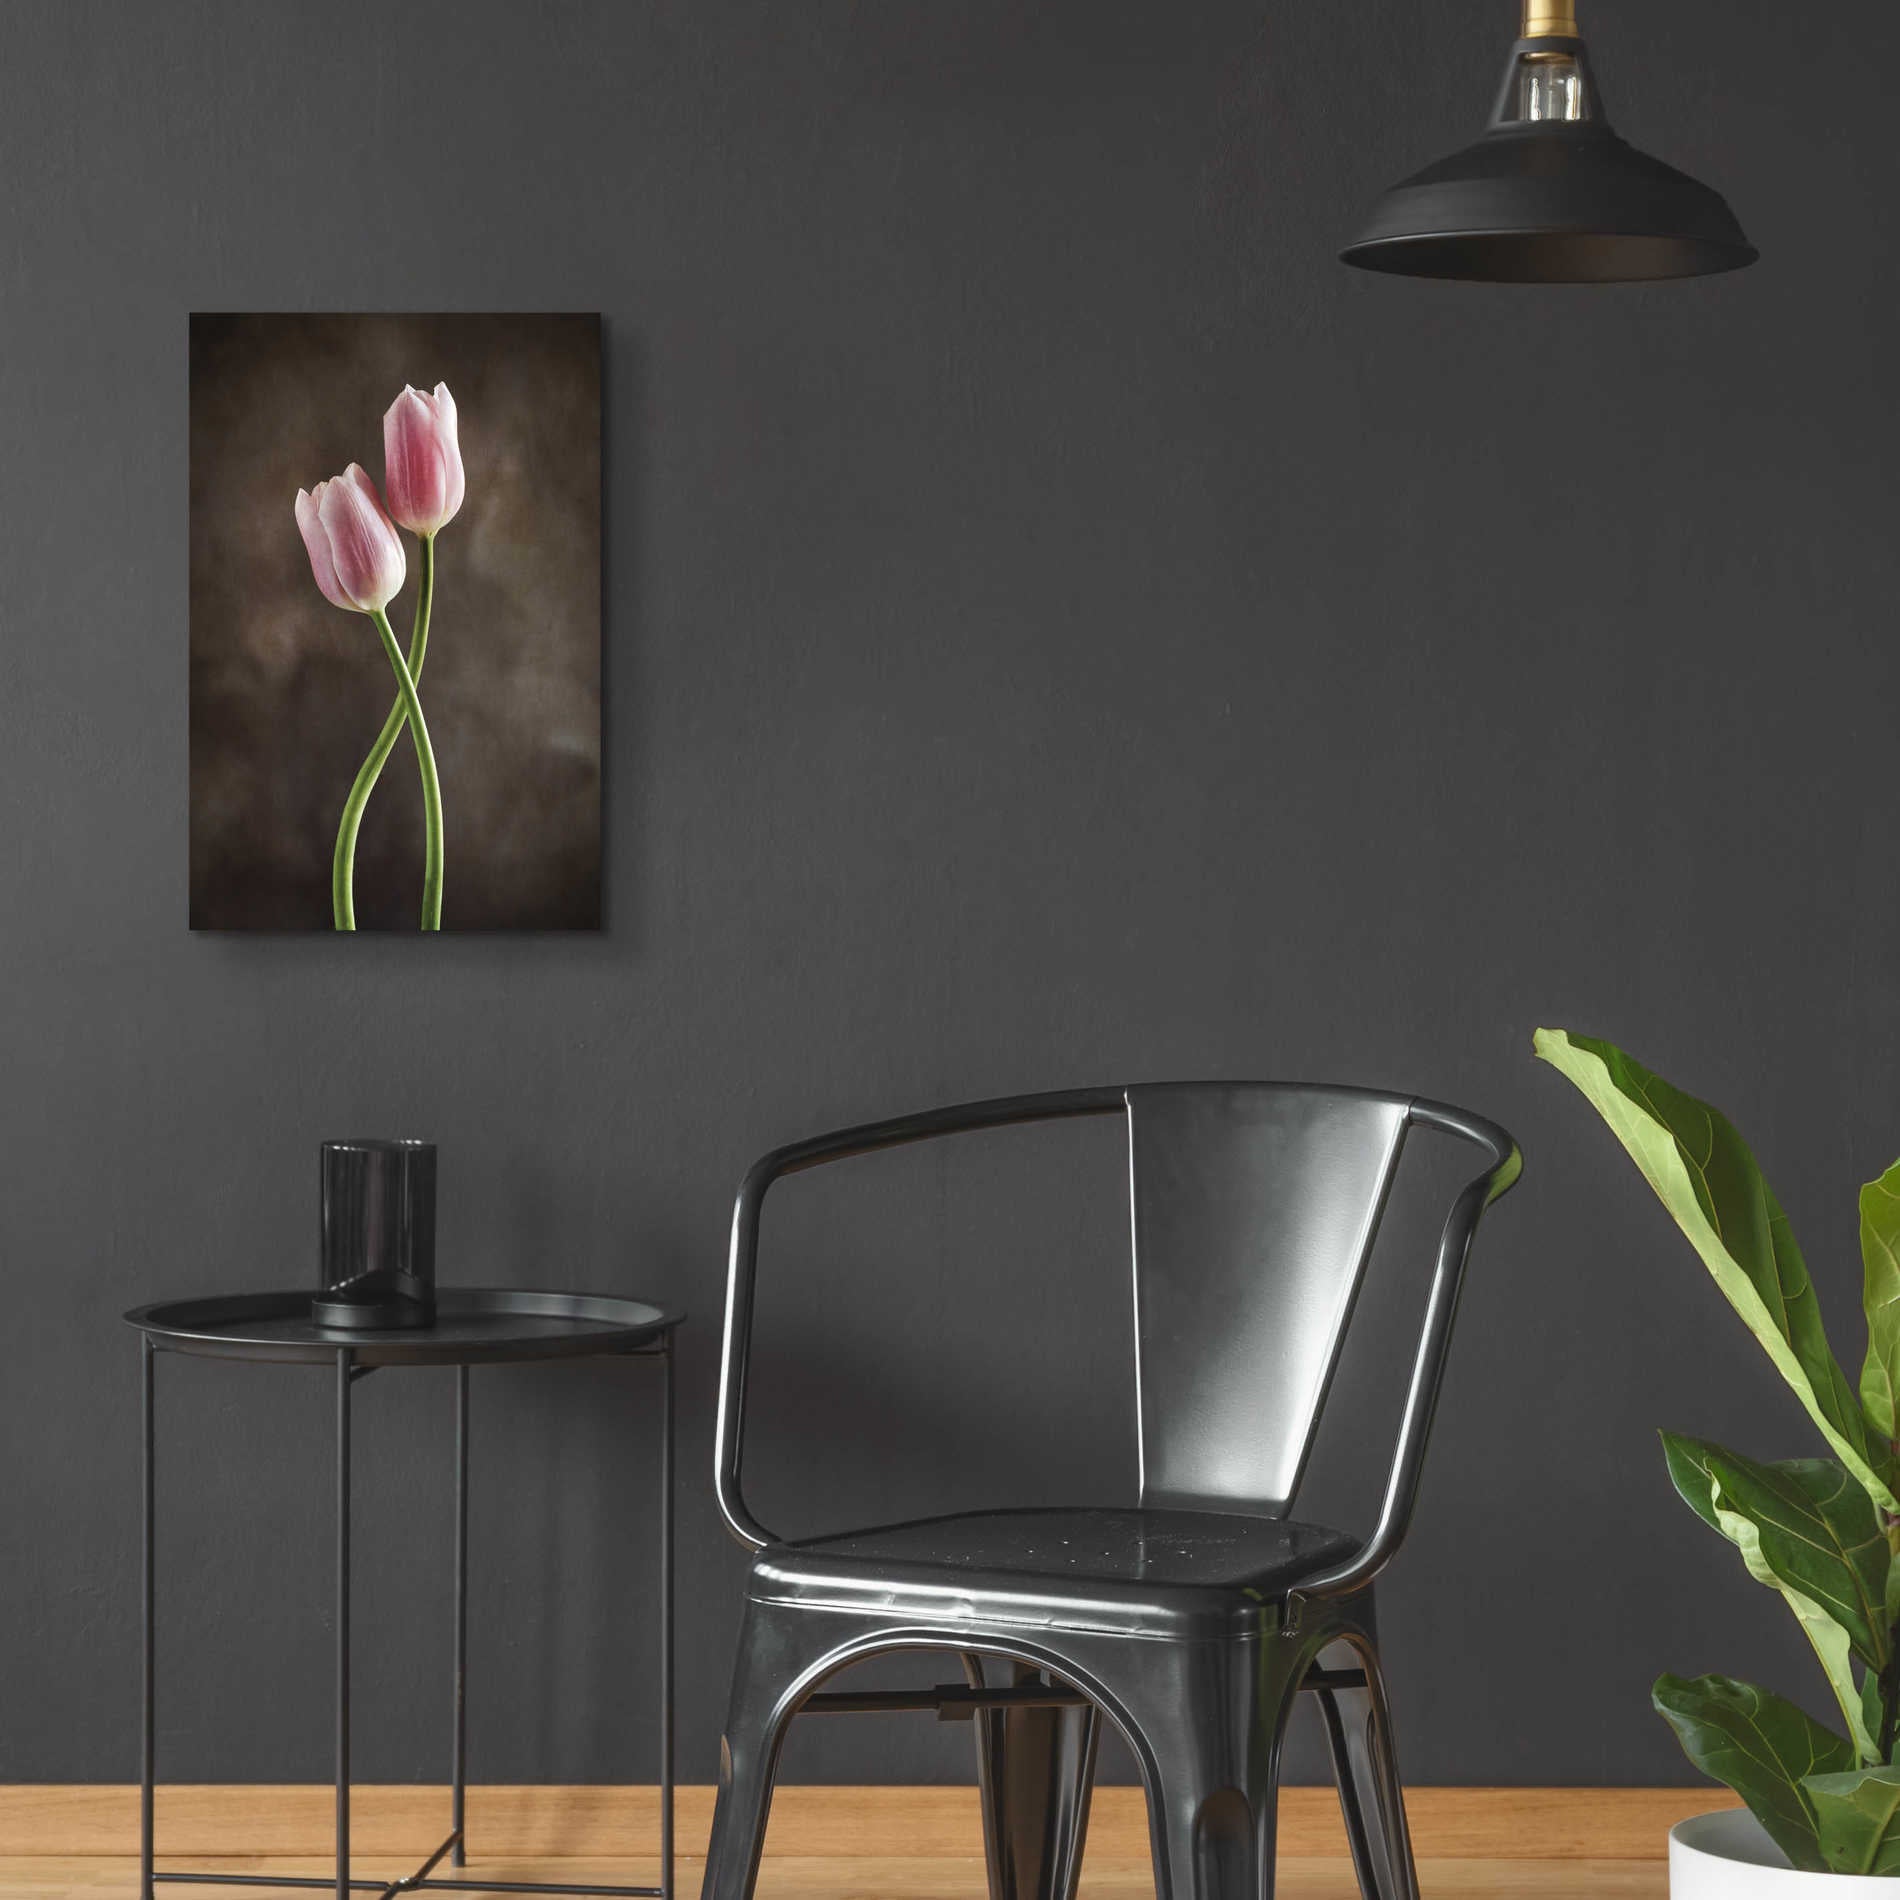 Epic Art 'Spring Tulips V' by Debra Van Swearingen, Acrylic Glass Wall Art,16x24